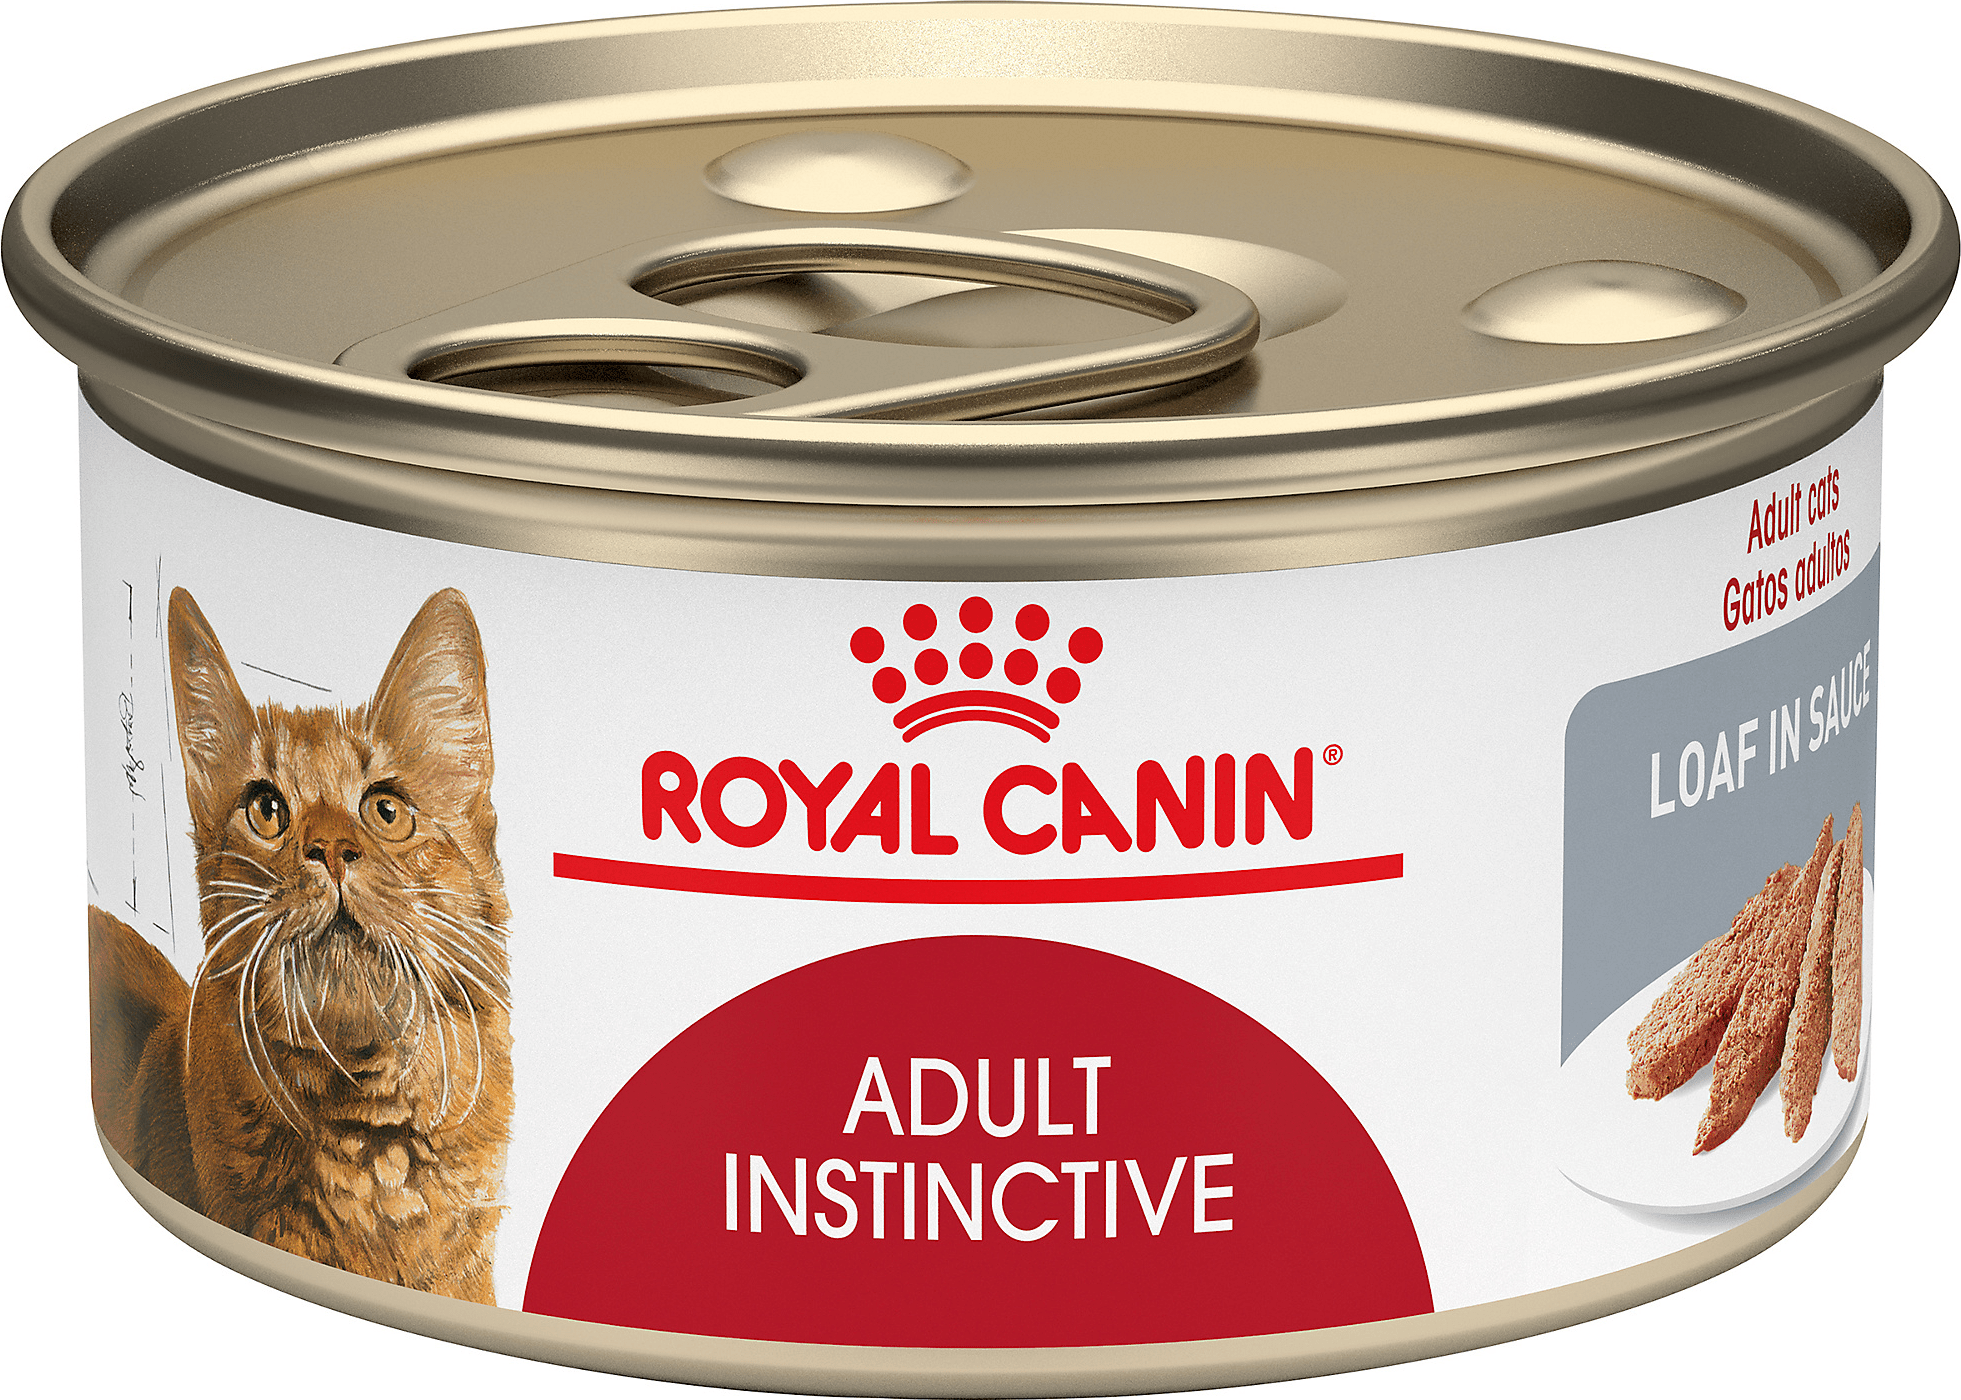 Royal Canin Adult Instinctive Loaf In Sauce